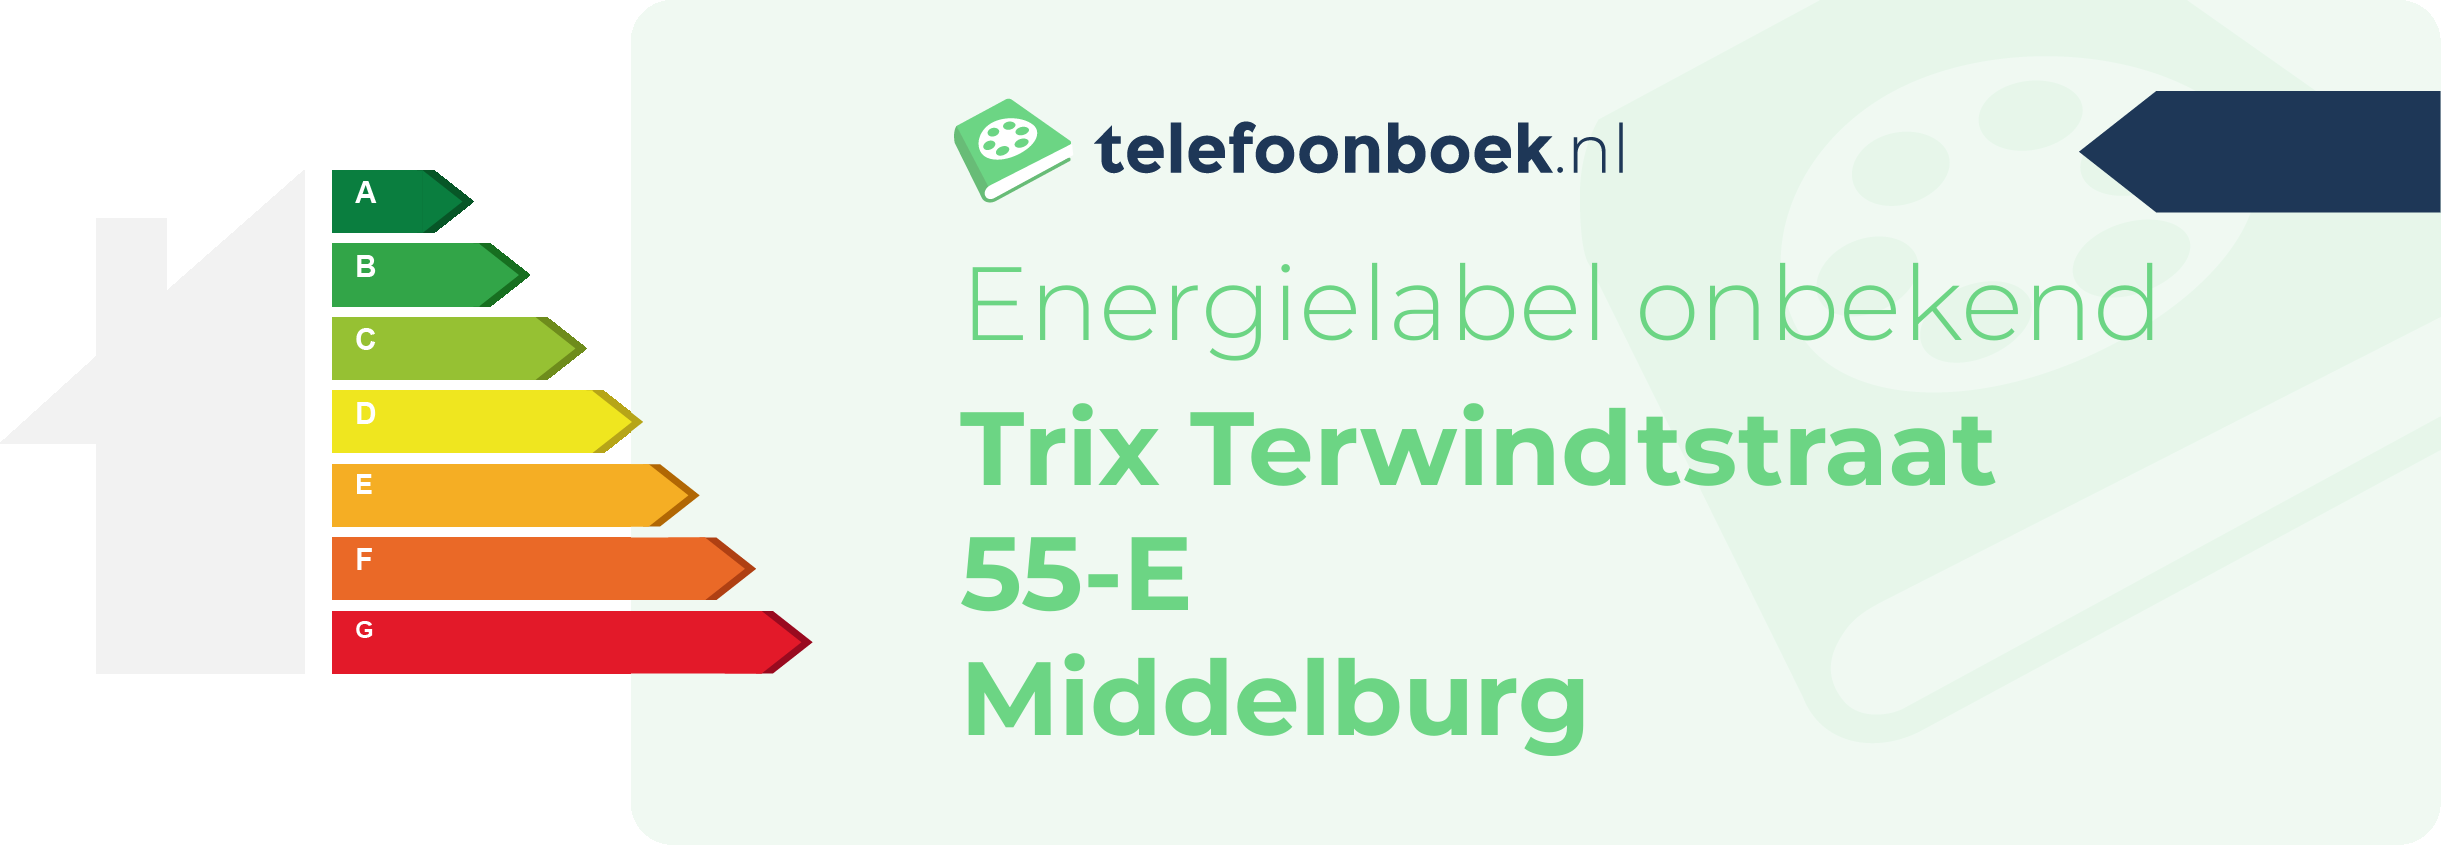 Energielabel Trix Terwindtstraat 55-E Middelburg